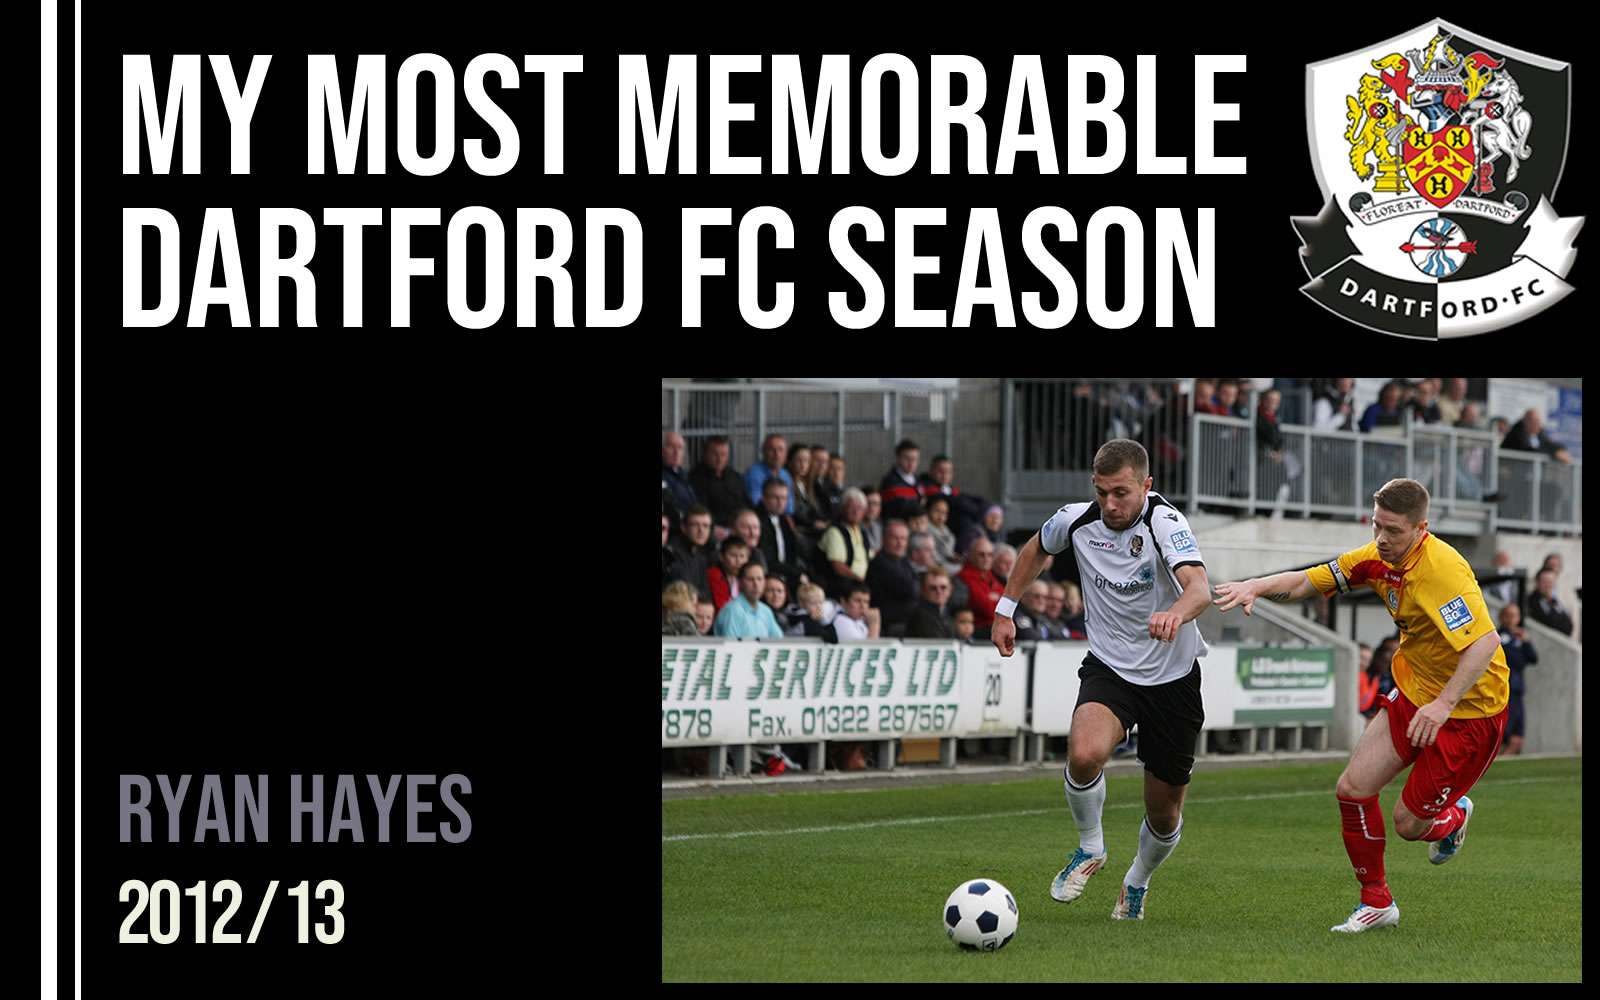 My Most Memorable Season - Ryan Hayes